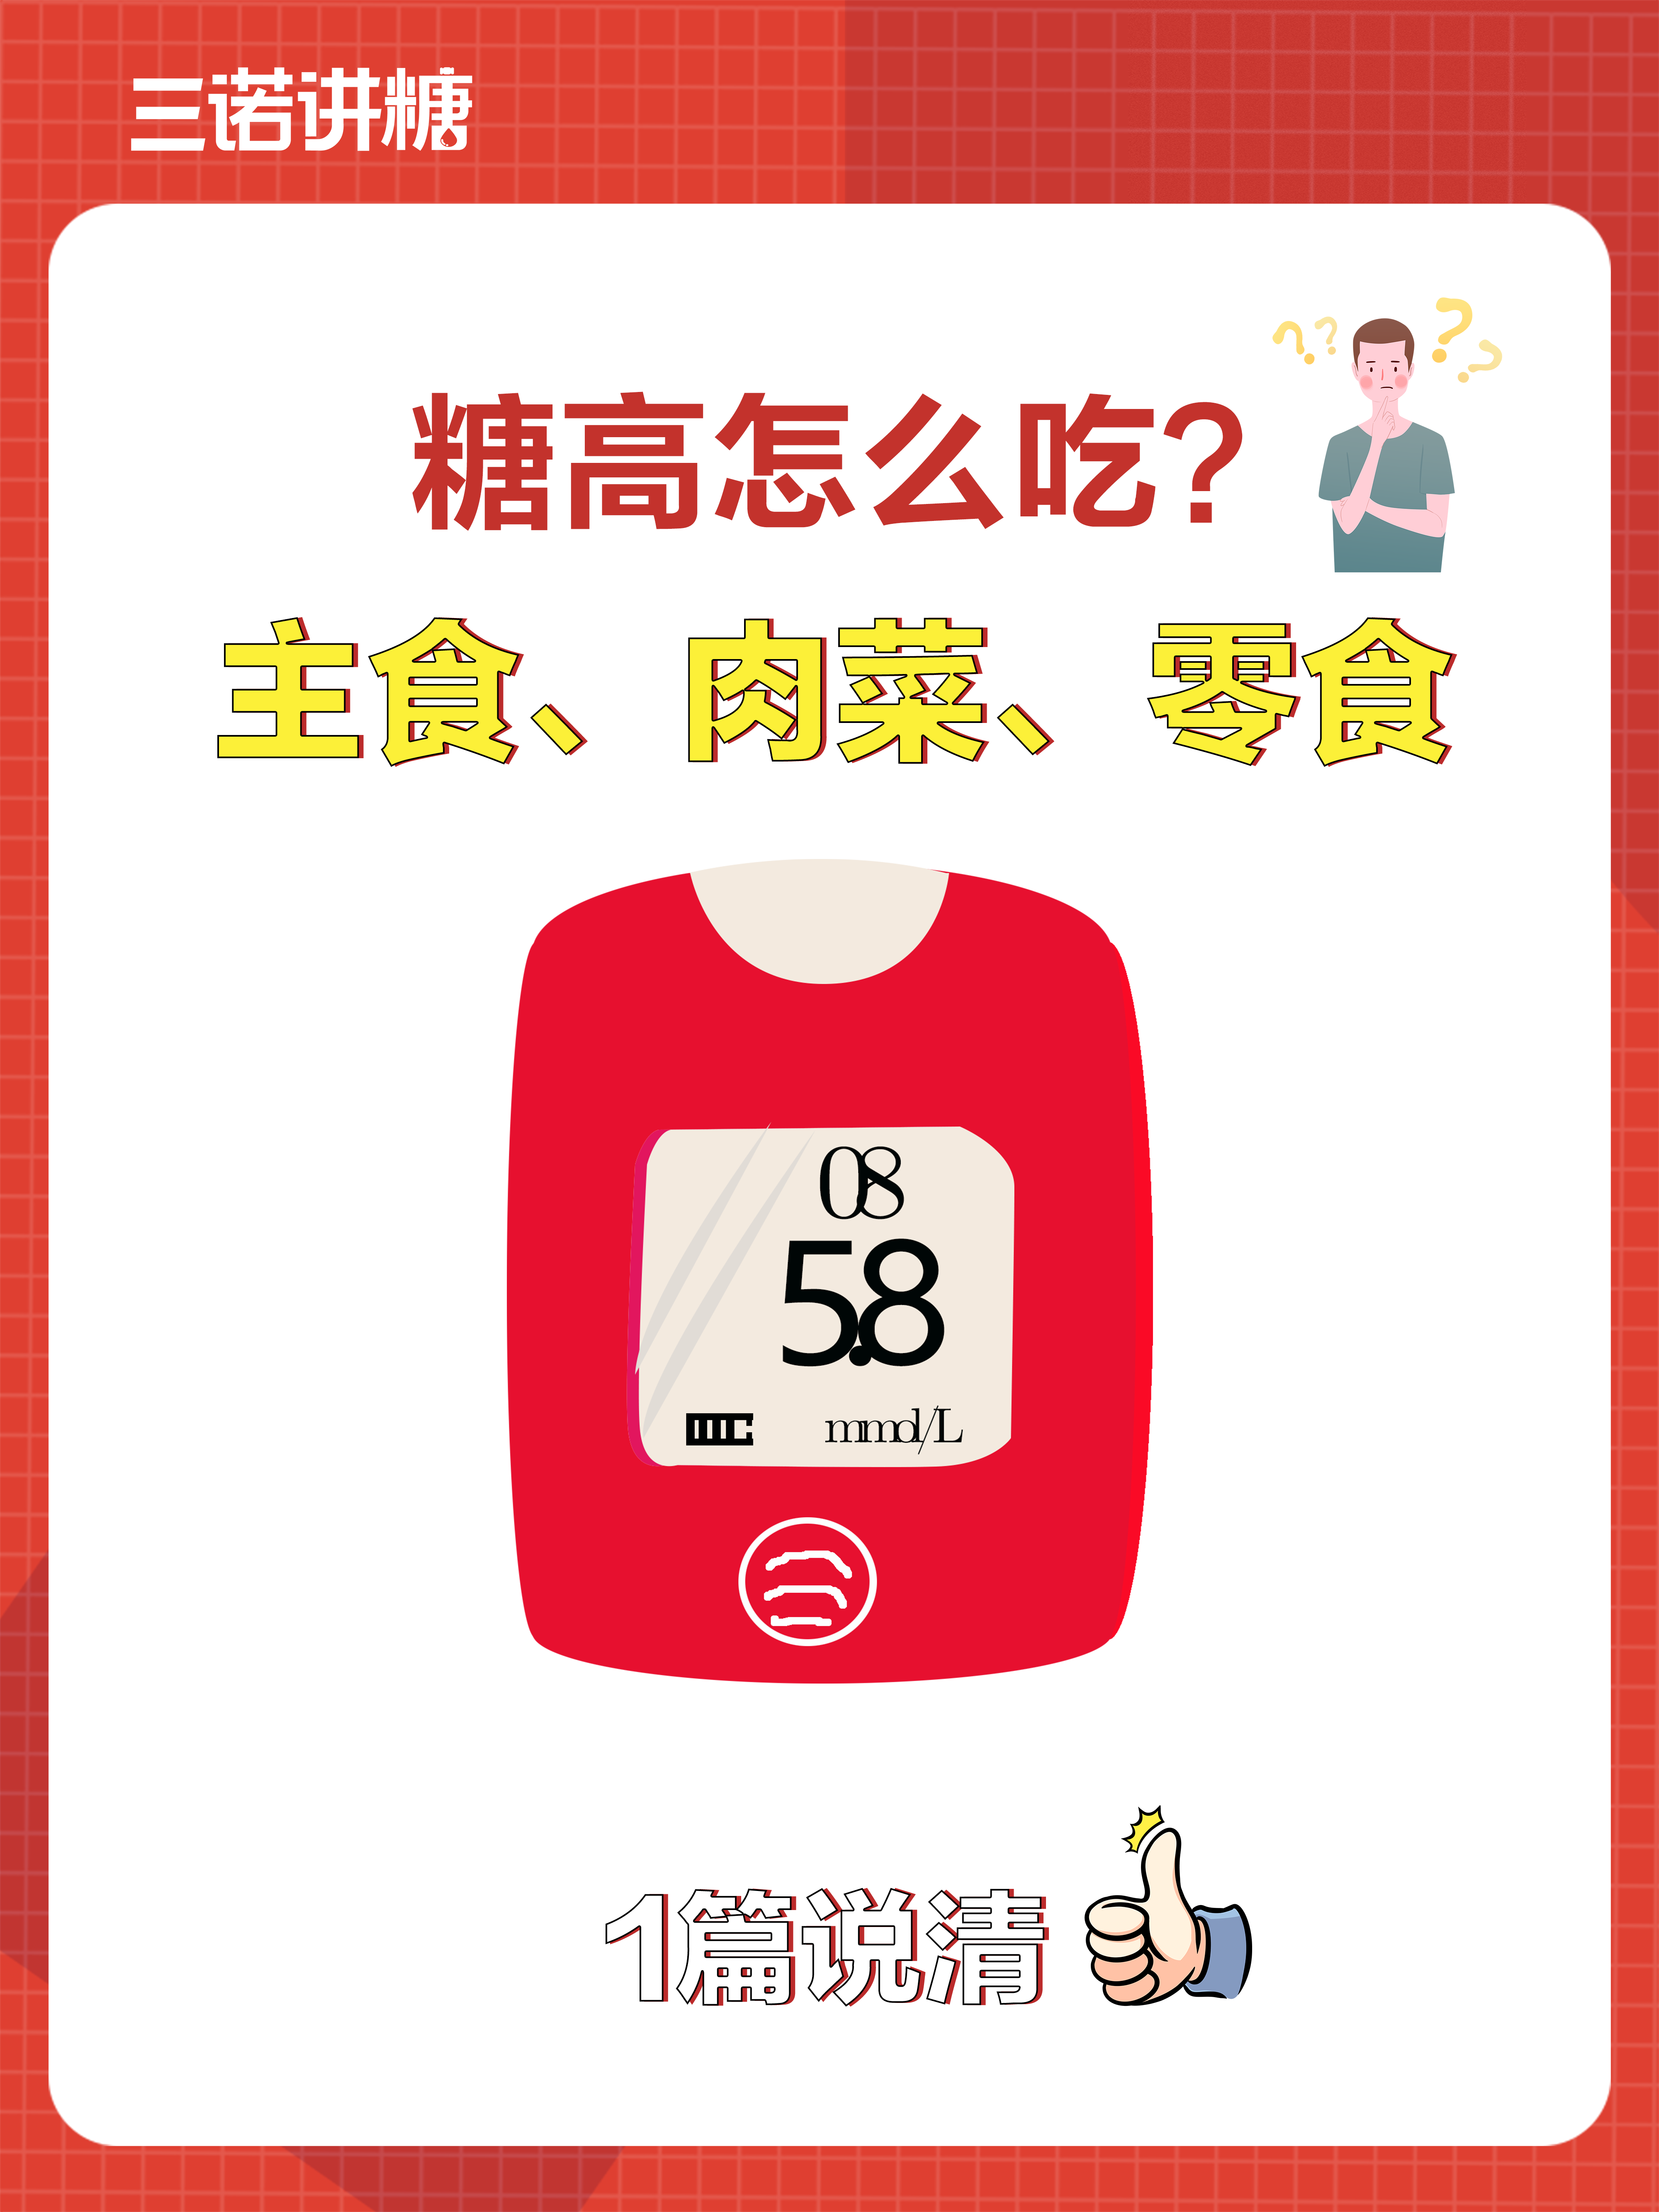 最全的糖尿病饮食清单，不看会后悔！ - 欢迎访问强生血糖仪稳捷ONE TOUCH中国官方网站